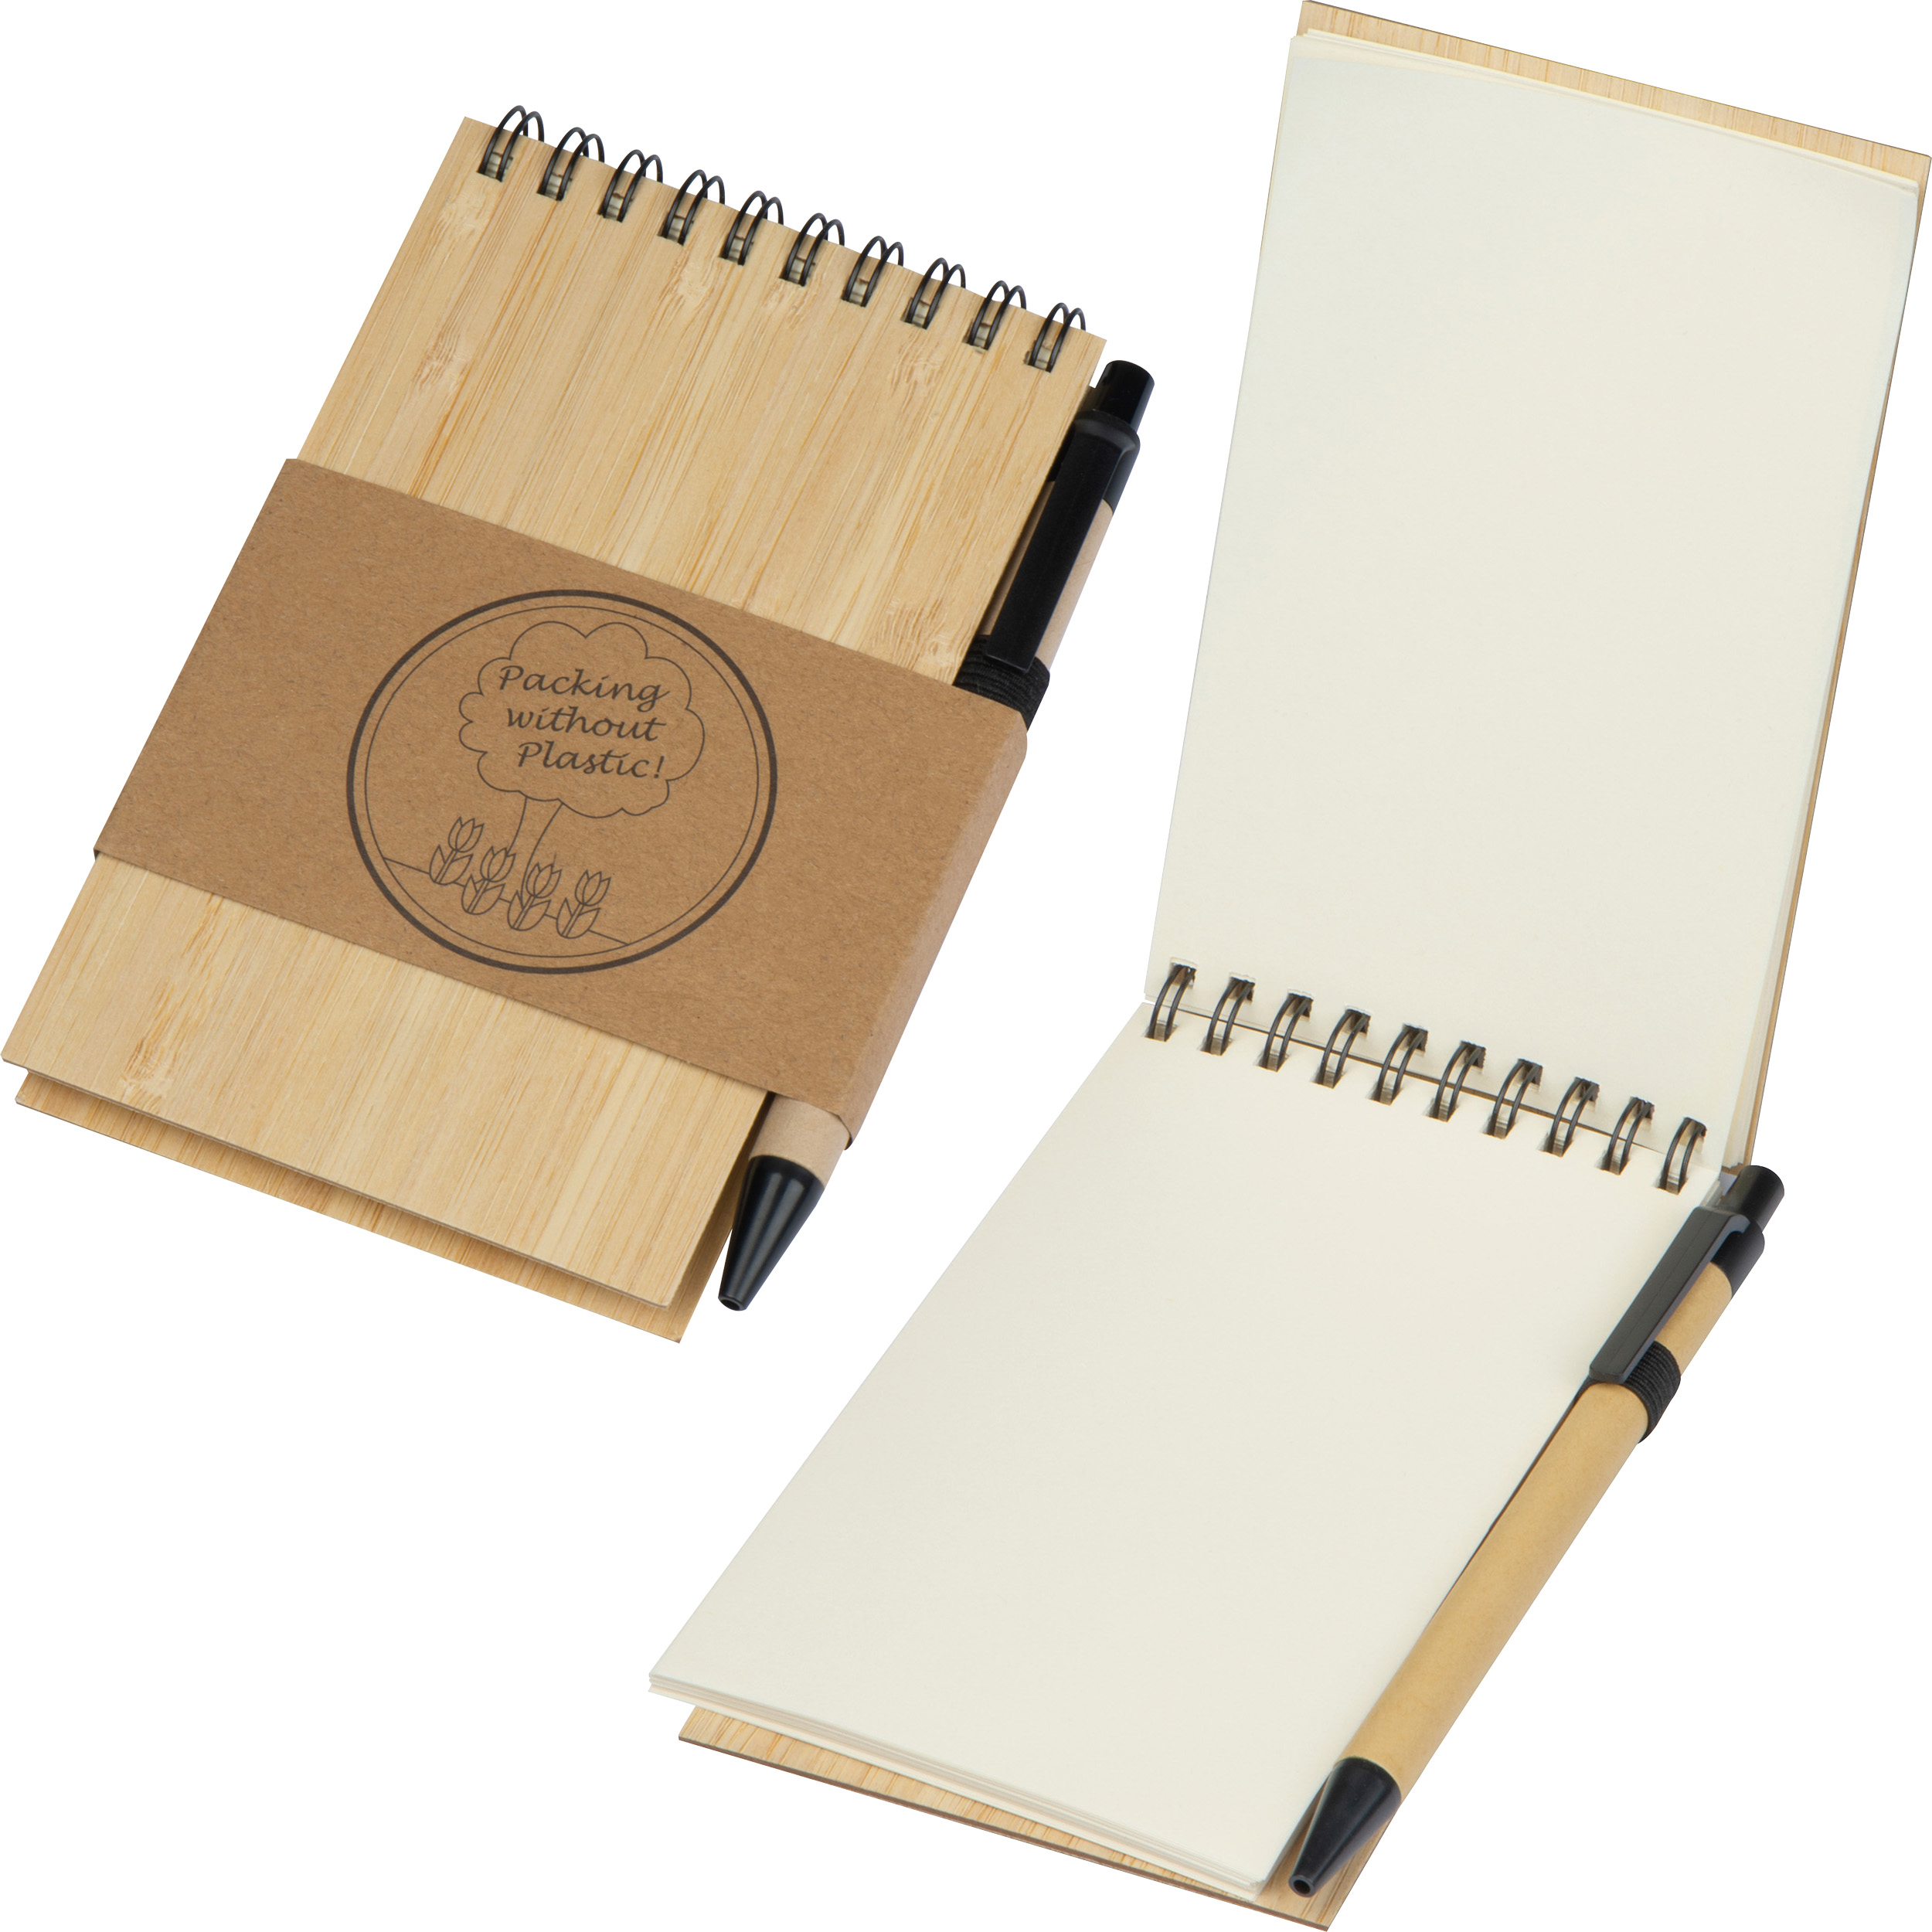 Bamboo Notebook with Engraving - Uffculme - Lenton